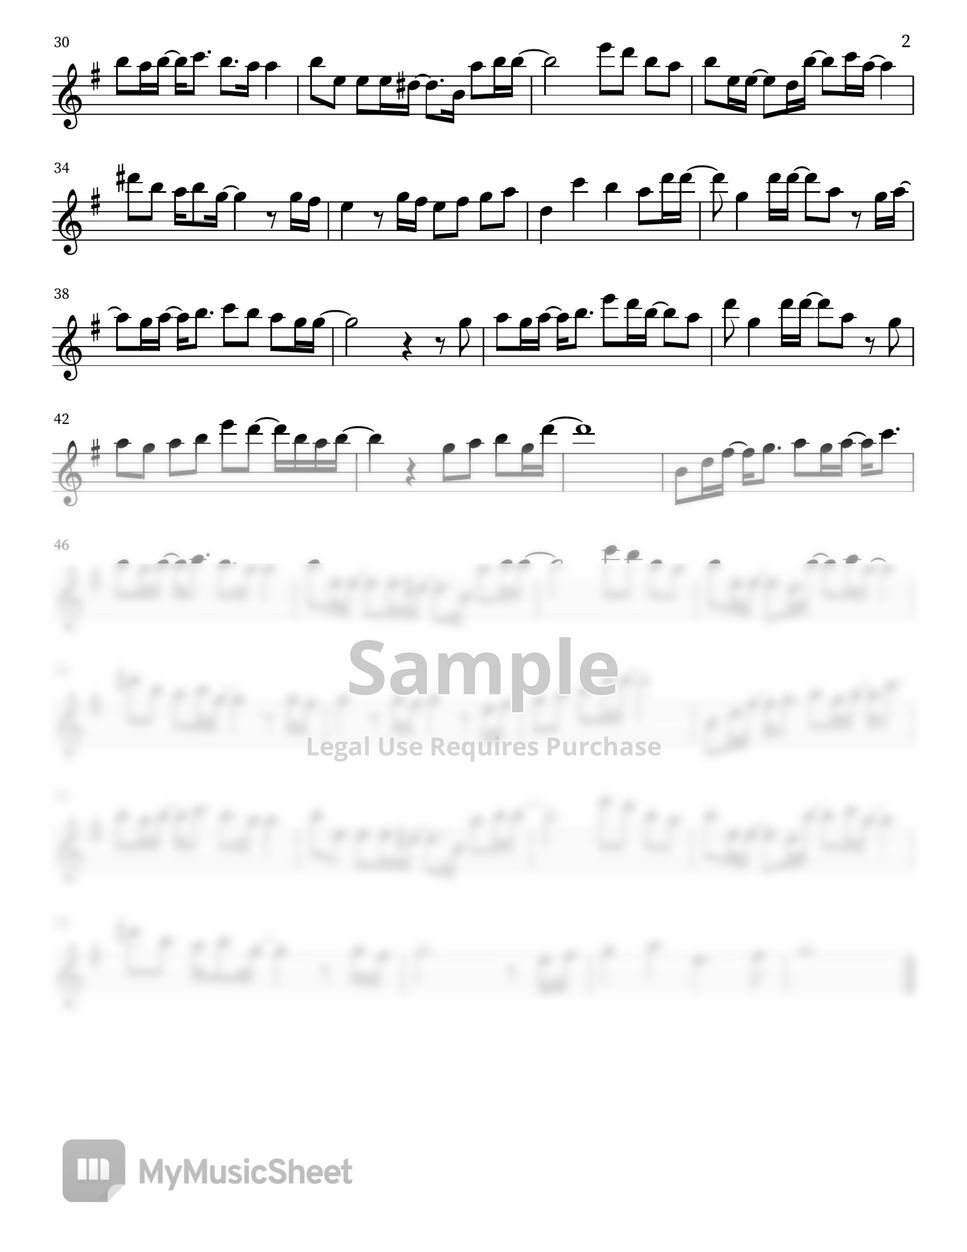 韋禮安 WeiBird - 如果可以 If it is Possible 長笛譜 [電影月老主題曲] (with Youtube Flute Cover) by YS Flute